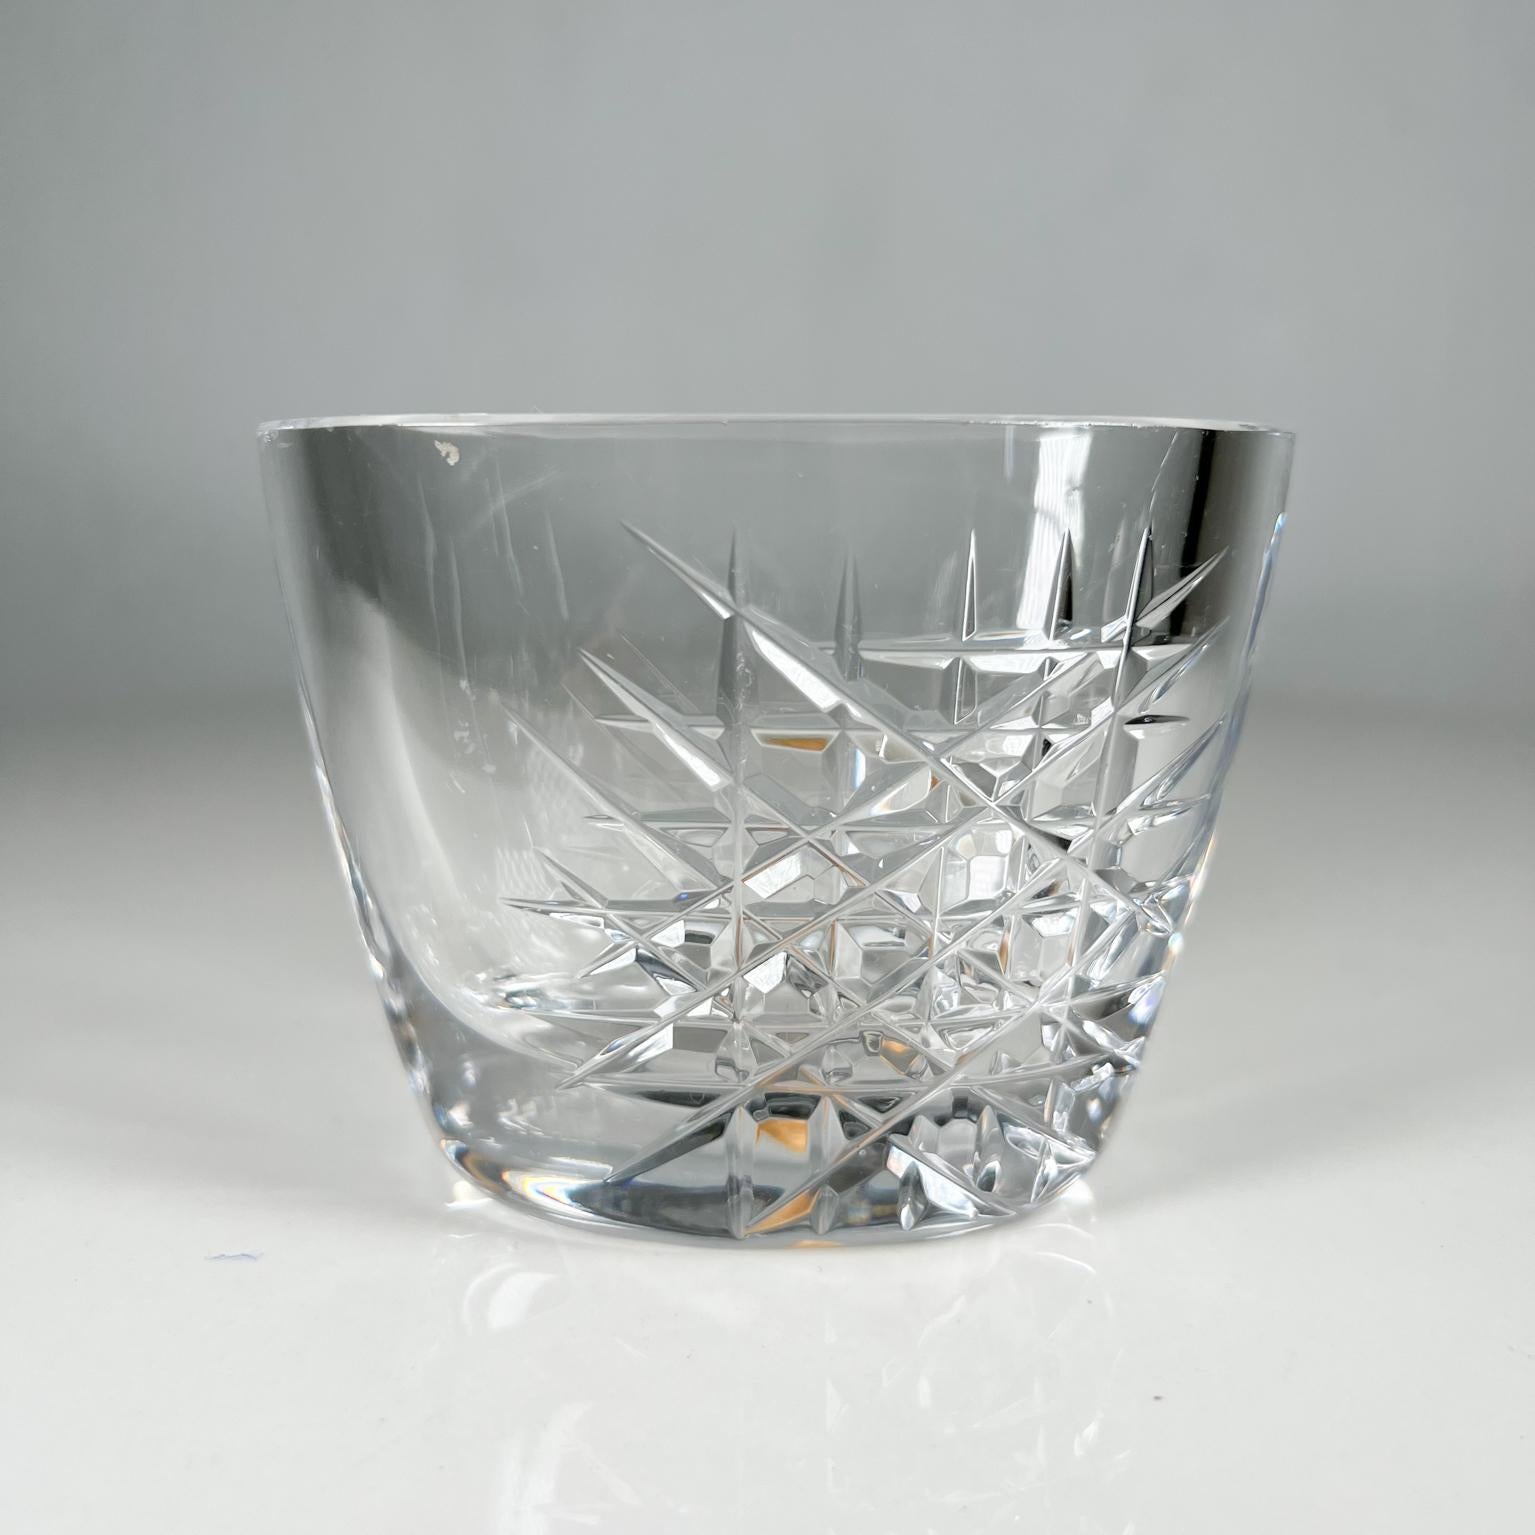 Vintage Orrefors Kristallglas Vase Schale Schweden 
Unterzeichnet                                                                                       
4 B x 2,5 T x 3 H                 
Gebrauchter Vintage-Zustand.
Siehe mitgelieferte Bilder.     